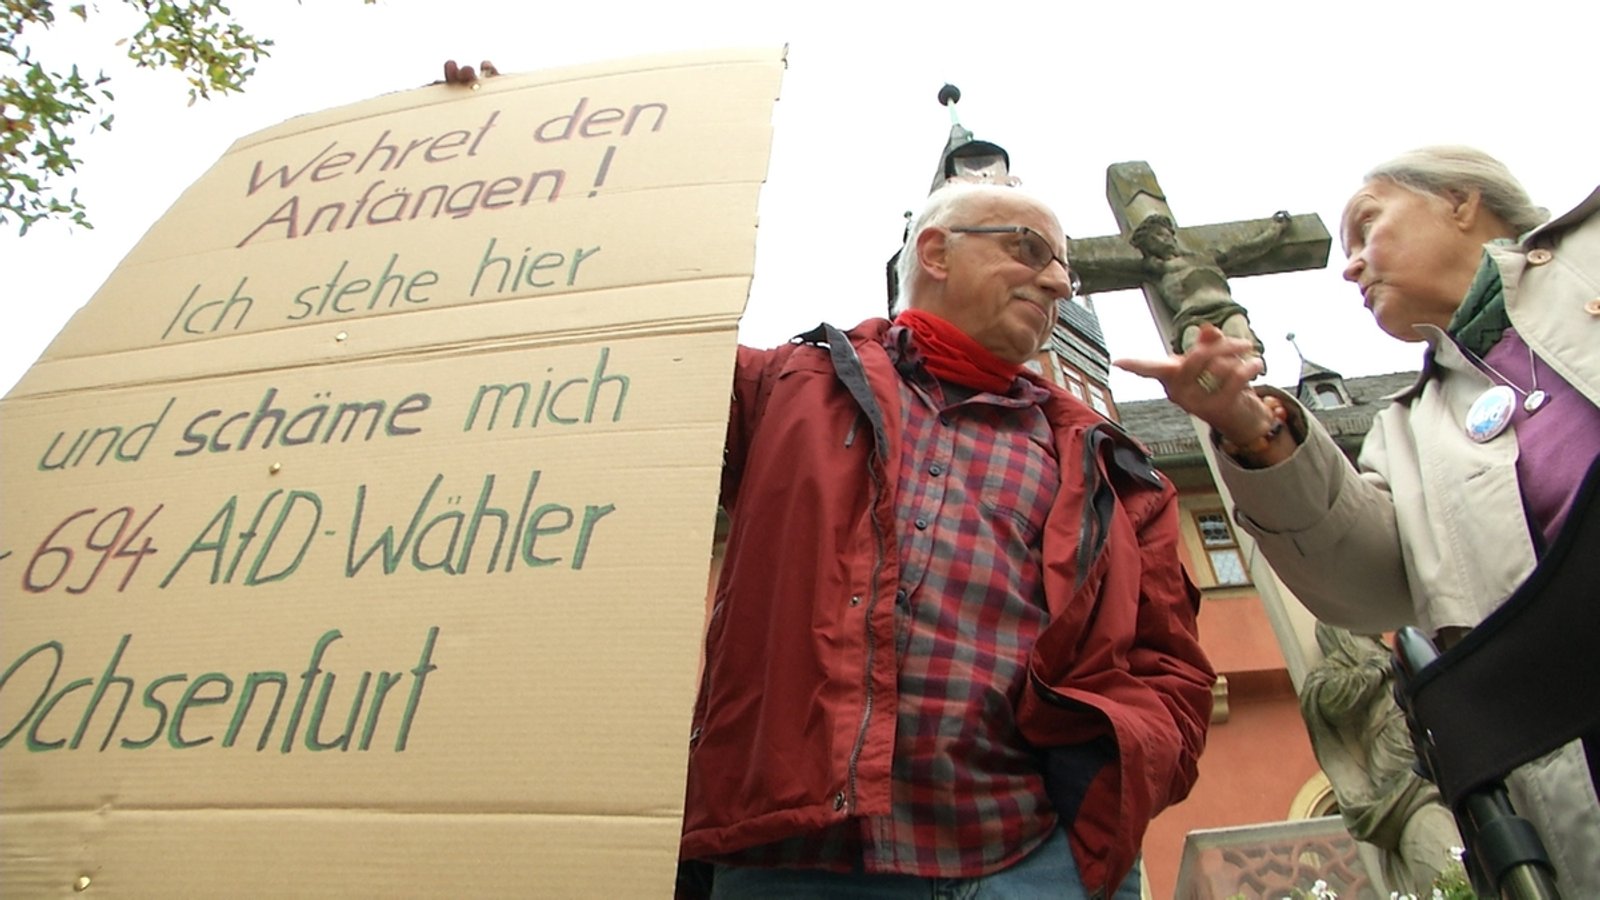 Protest gegen Rechts: Anti-AfD-Rentner in Ochsenfurt hört auf 